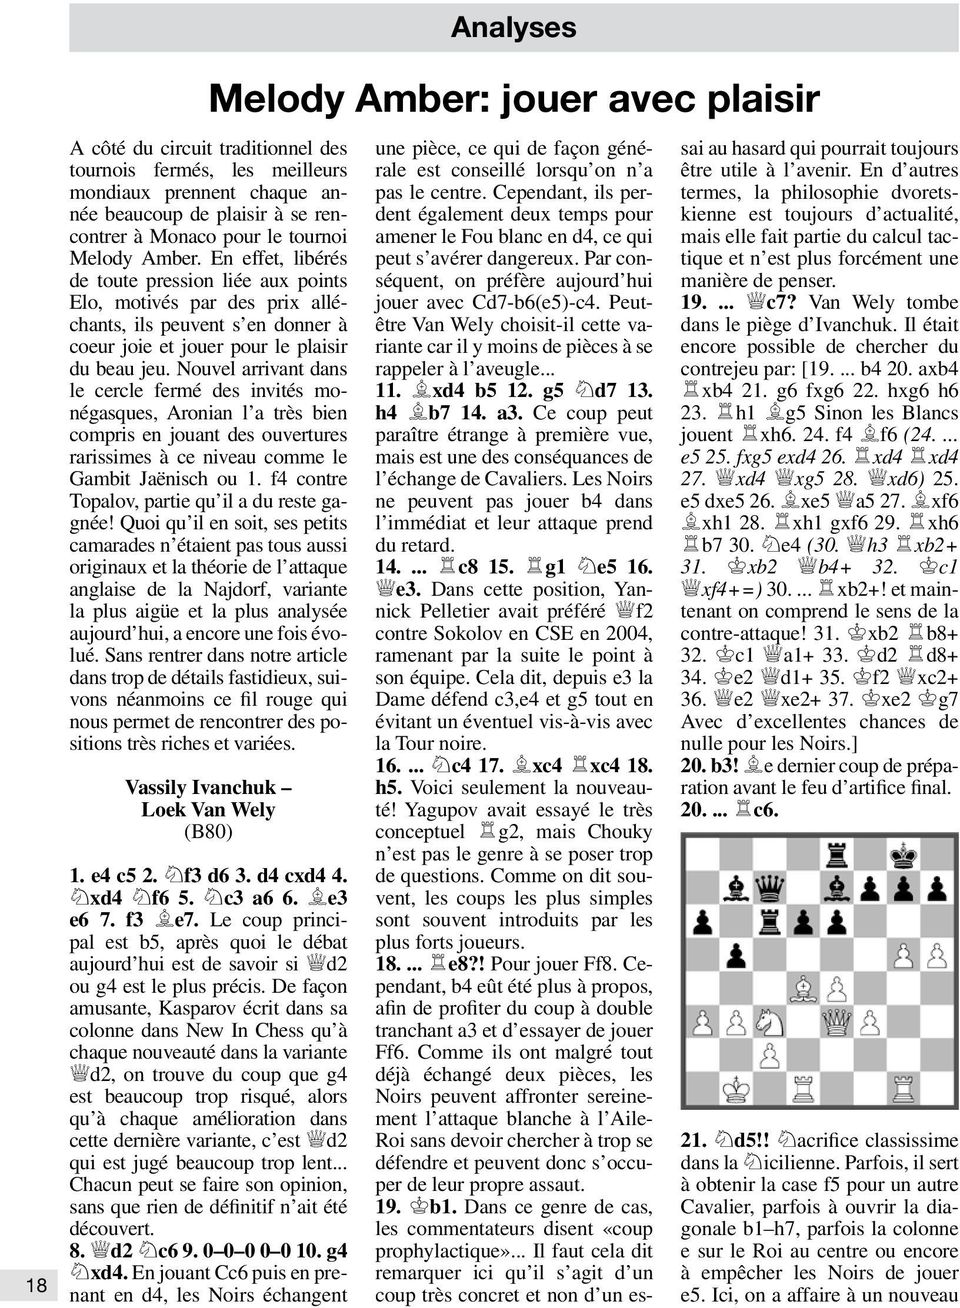 Nouvel arrivant dans le cercle fermé des invités monégasques, Aronian l a très bien compris en jouant des ouvertures rarissimes à ce niveau comme le Gambit Jaënisch ou 1.